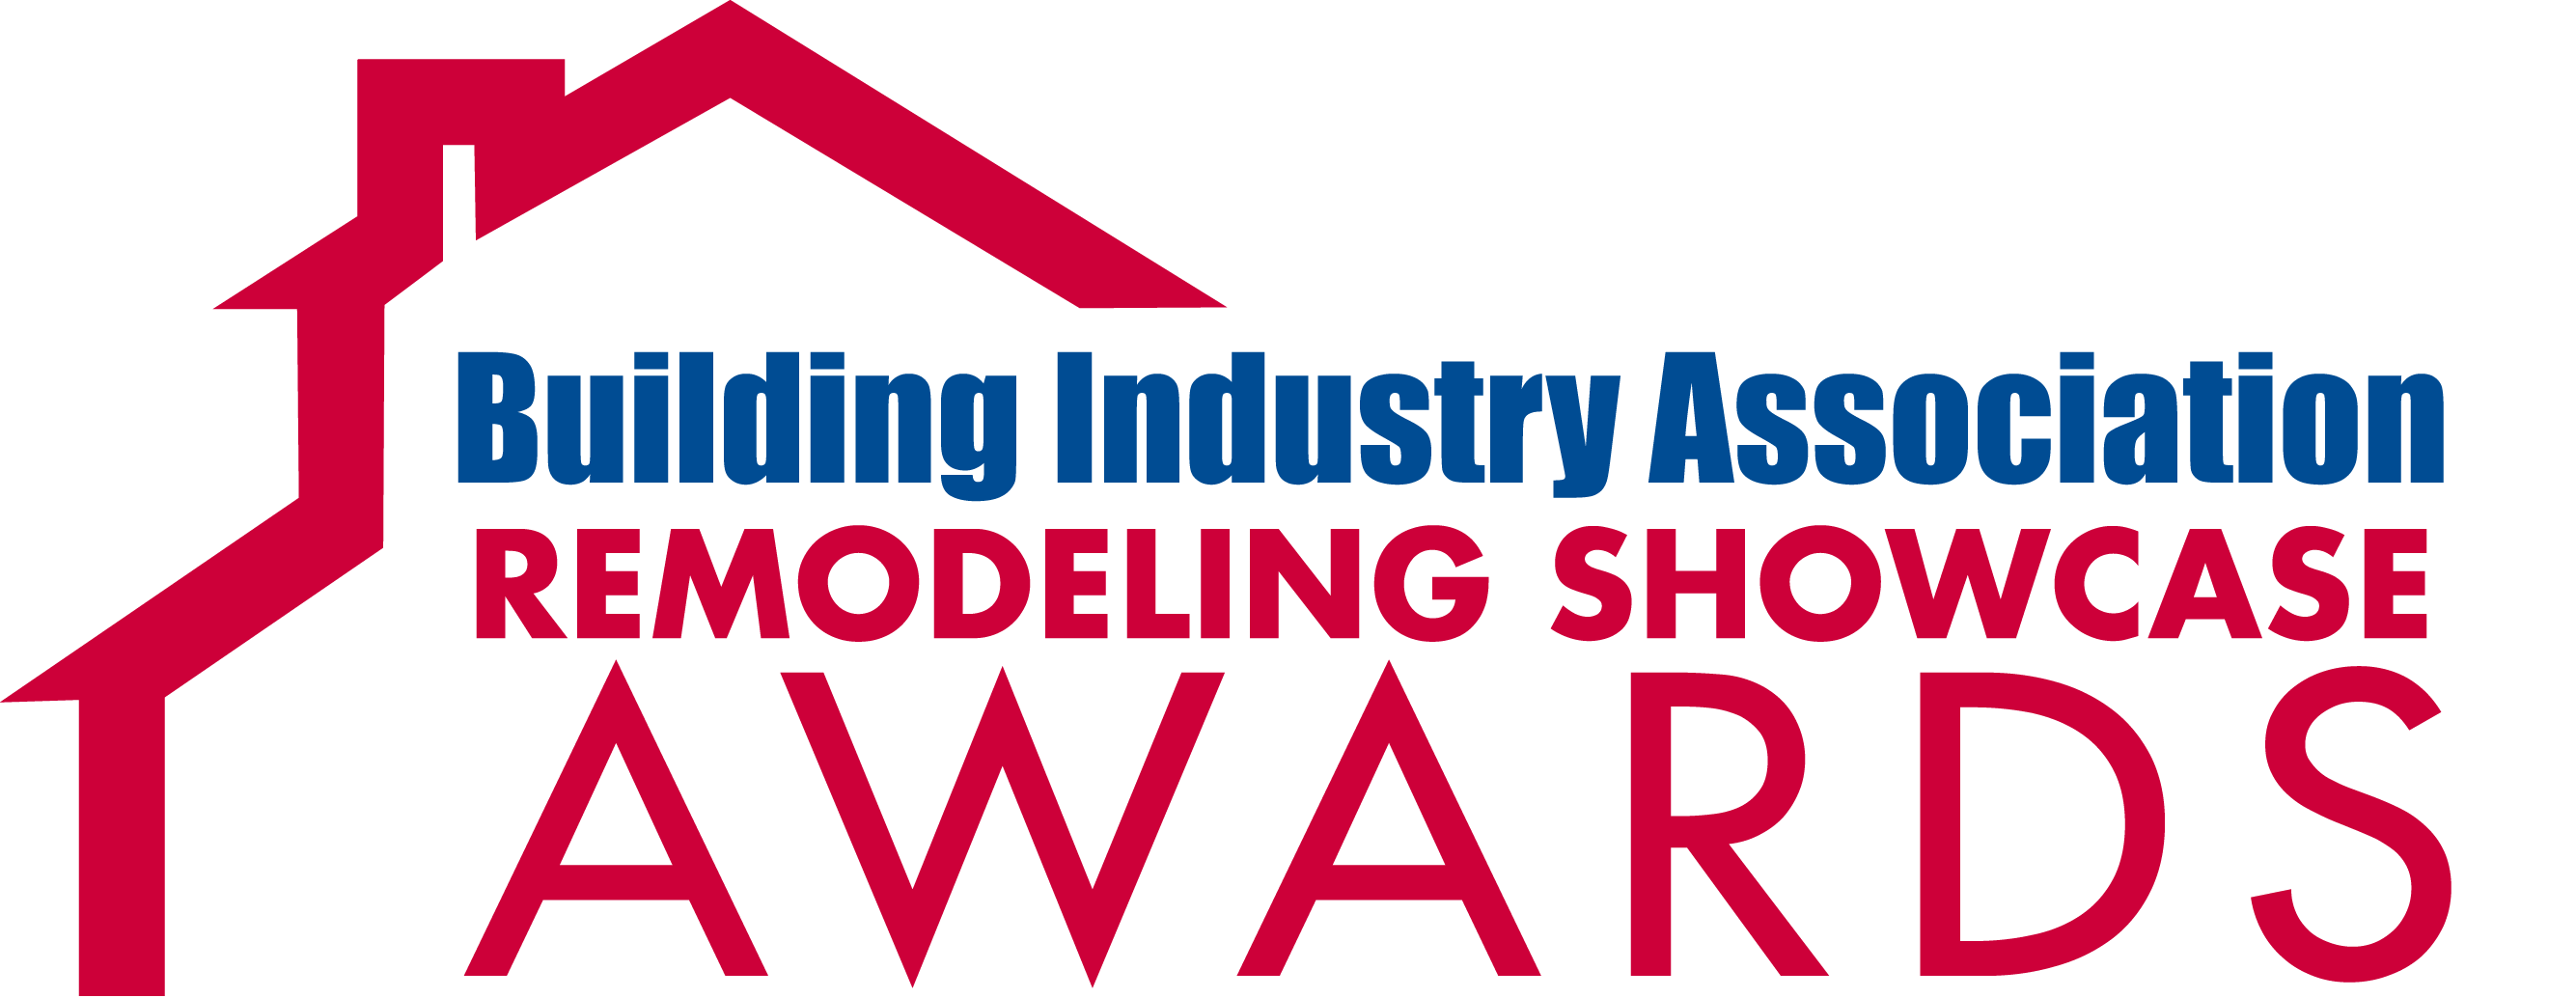 bia remodeling showcase awards logo